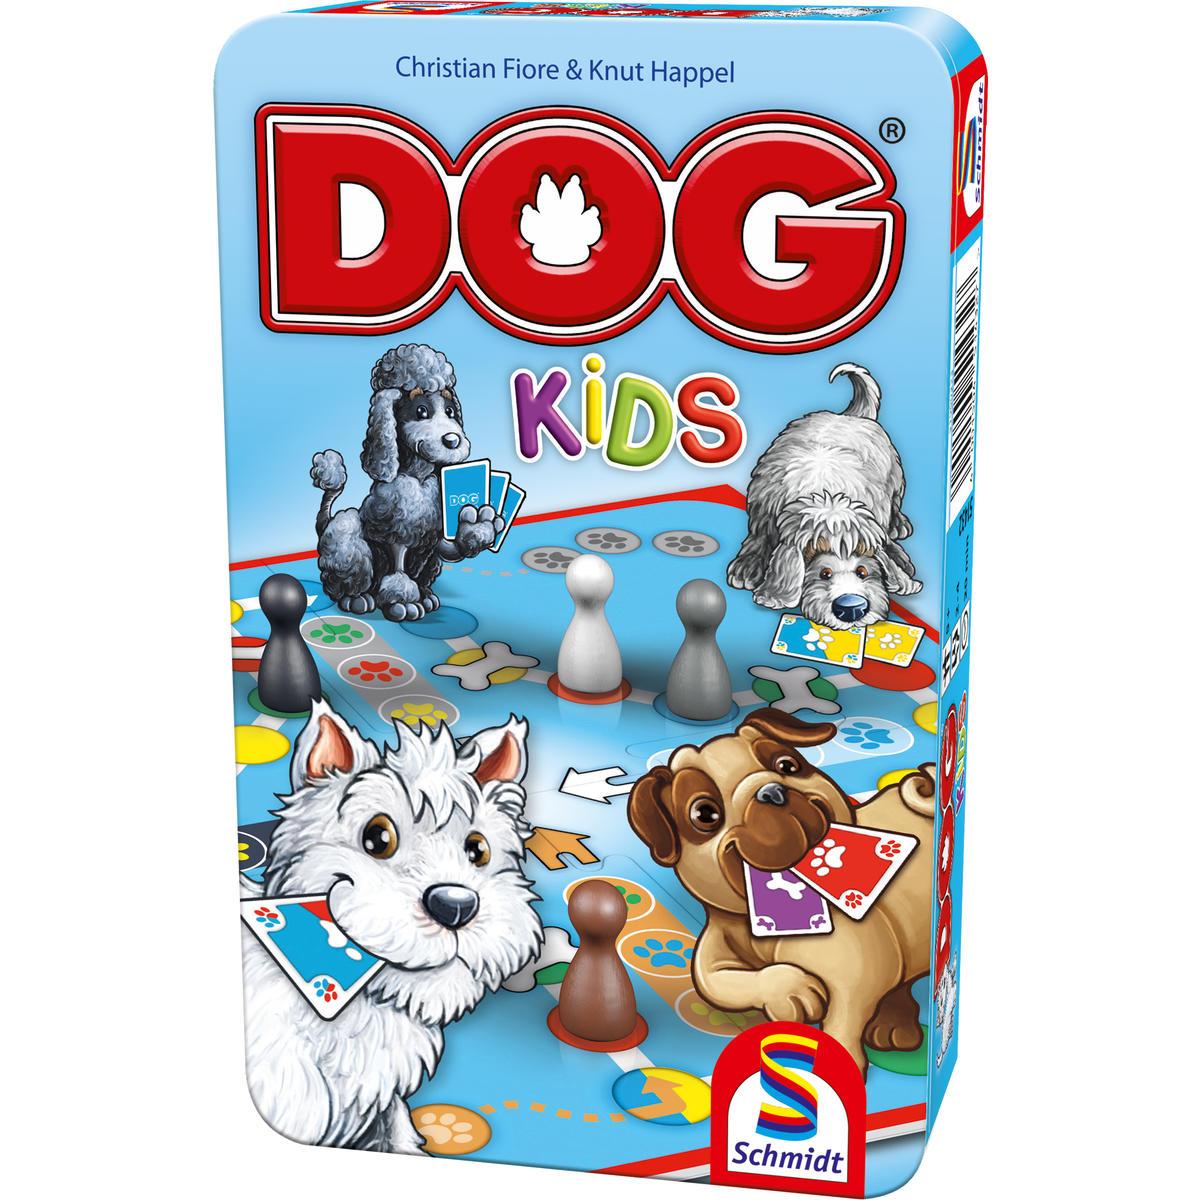 SCHMIDT SPIELE Kids in nein Metalldose DOG® Gesellschaftsspiel Bring-Mich-Mit-Spiel 